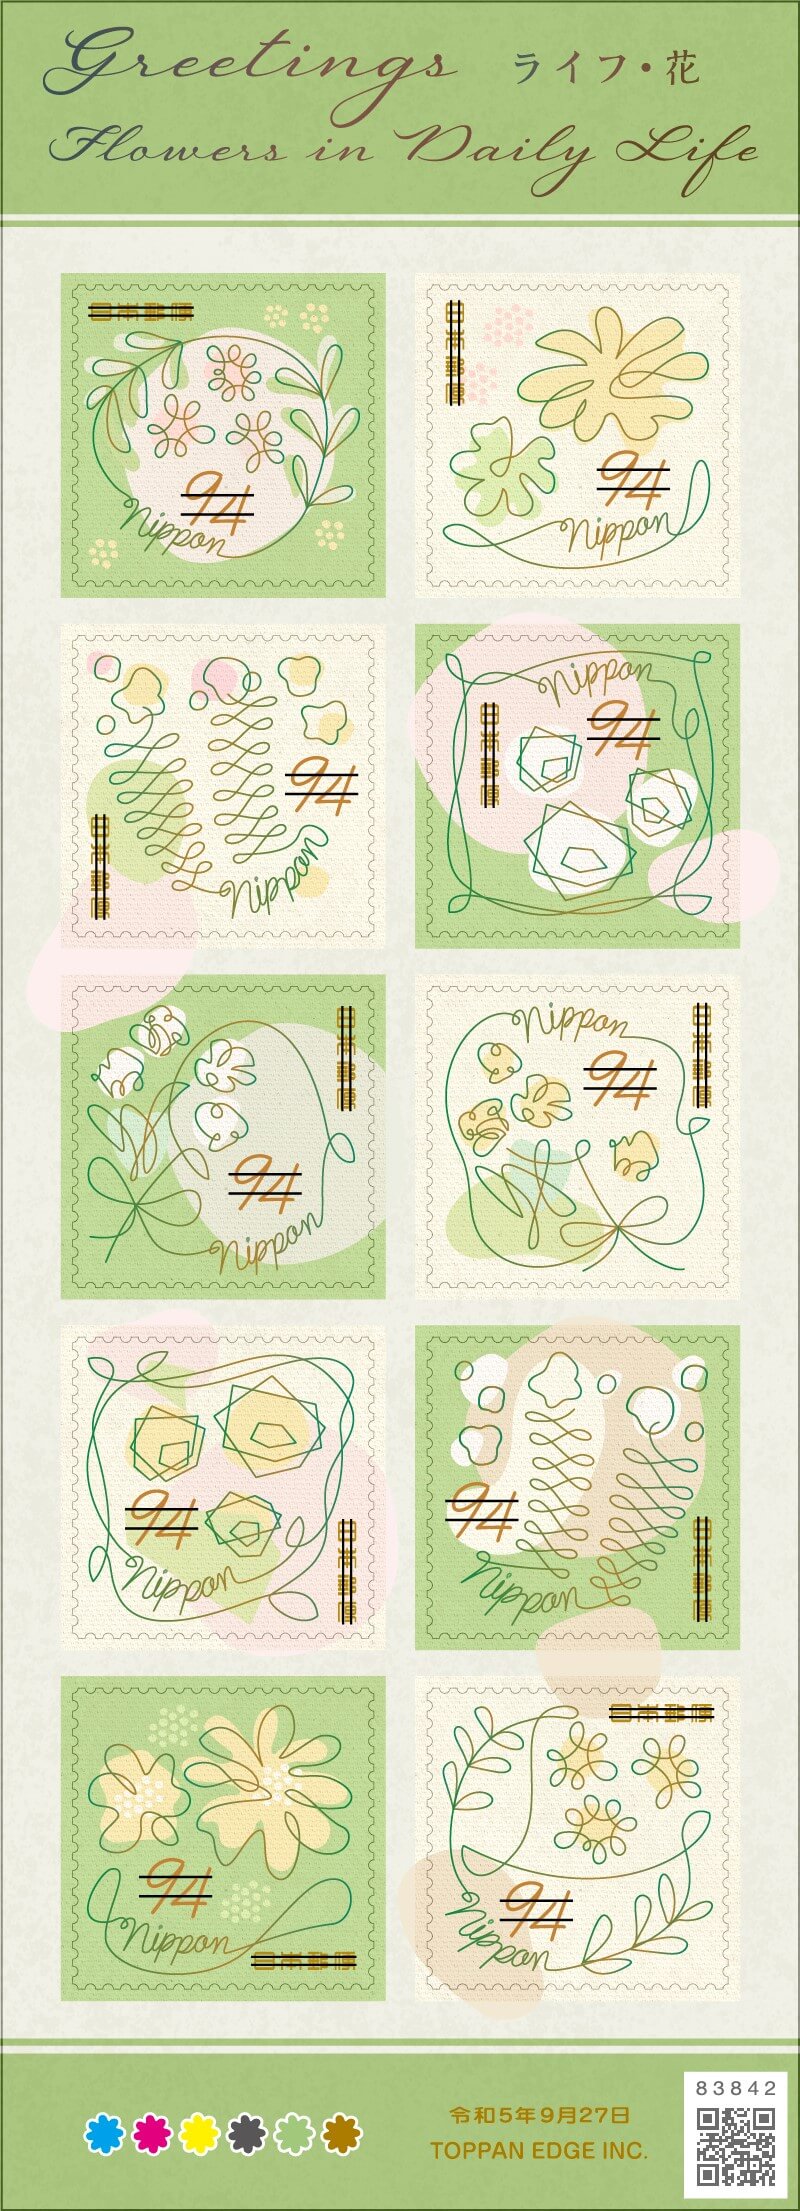 94円切手(1シート)